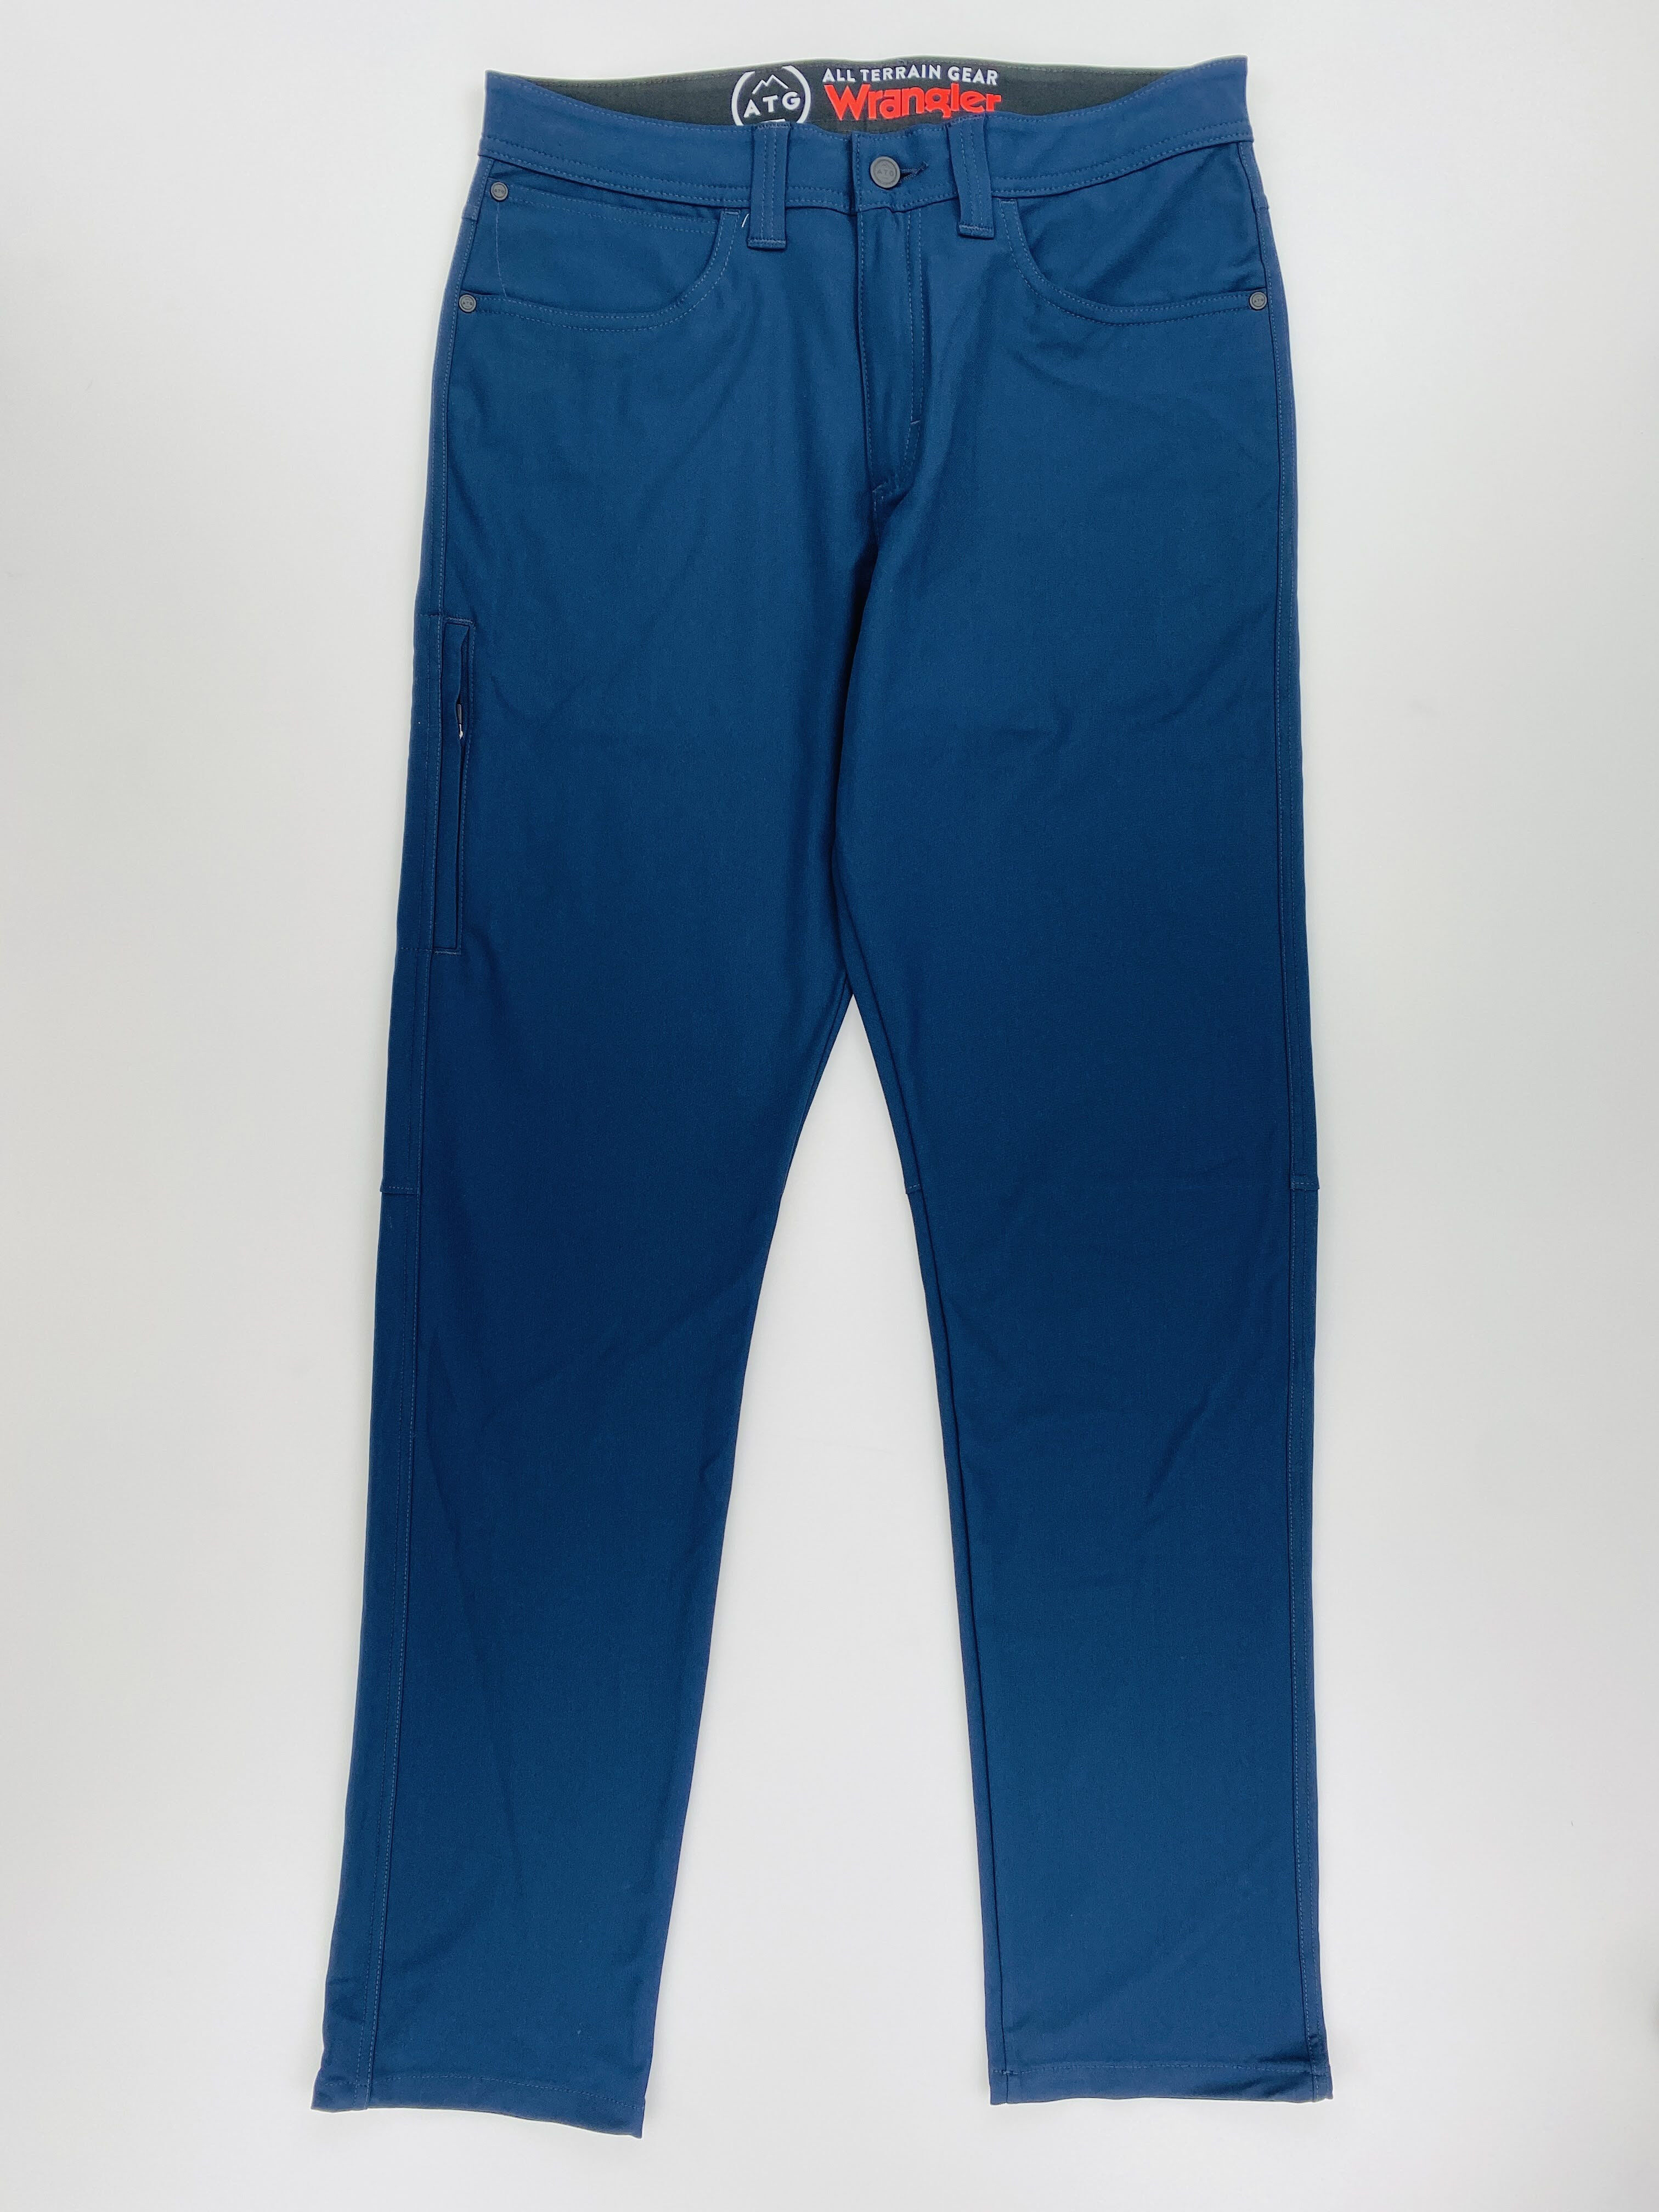 Wrangler Fwds 5 Pocket Pants - Second Hand Pánské turistické kalhoty - Modrý - US 32 | Hardloop